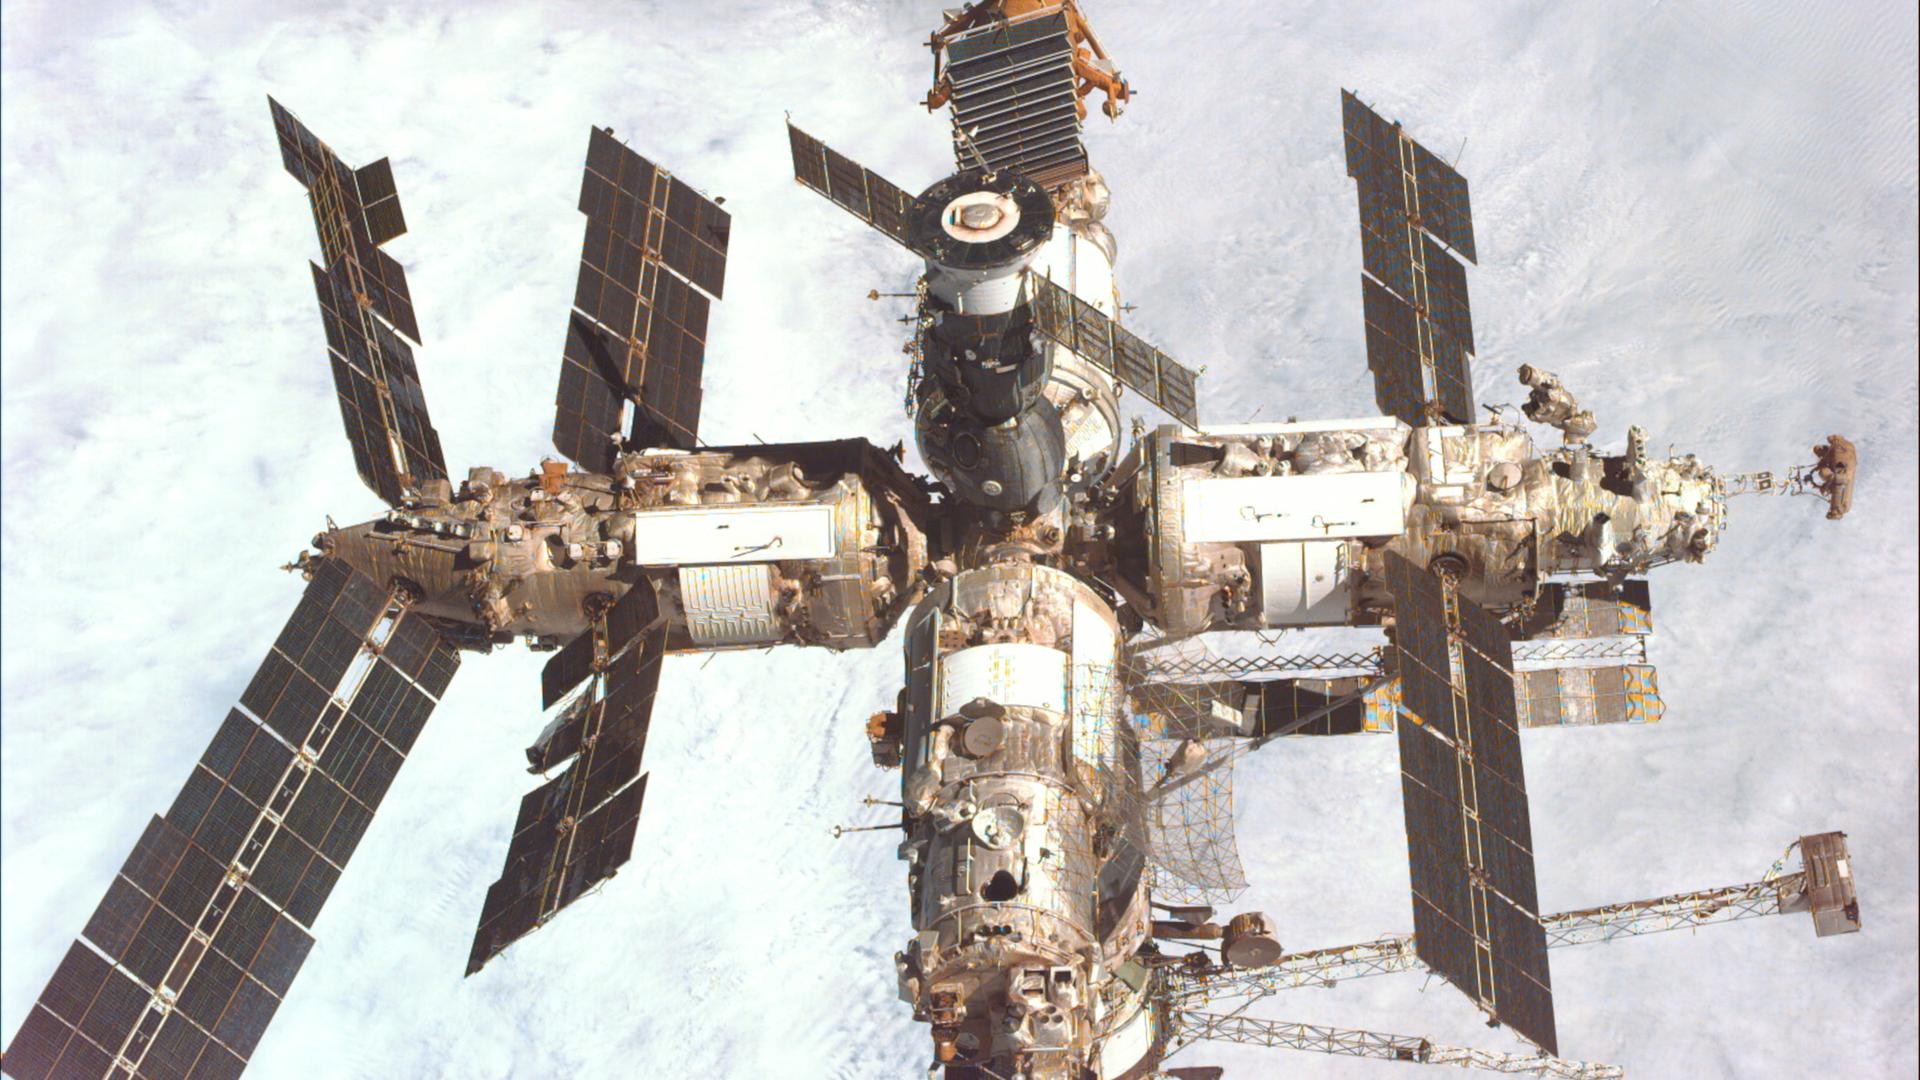 Die Raumstation Saljut 3 mit mehreren Forschungs-Modulen und Sonnensegeln